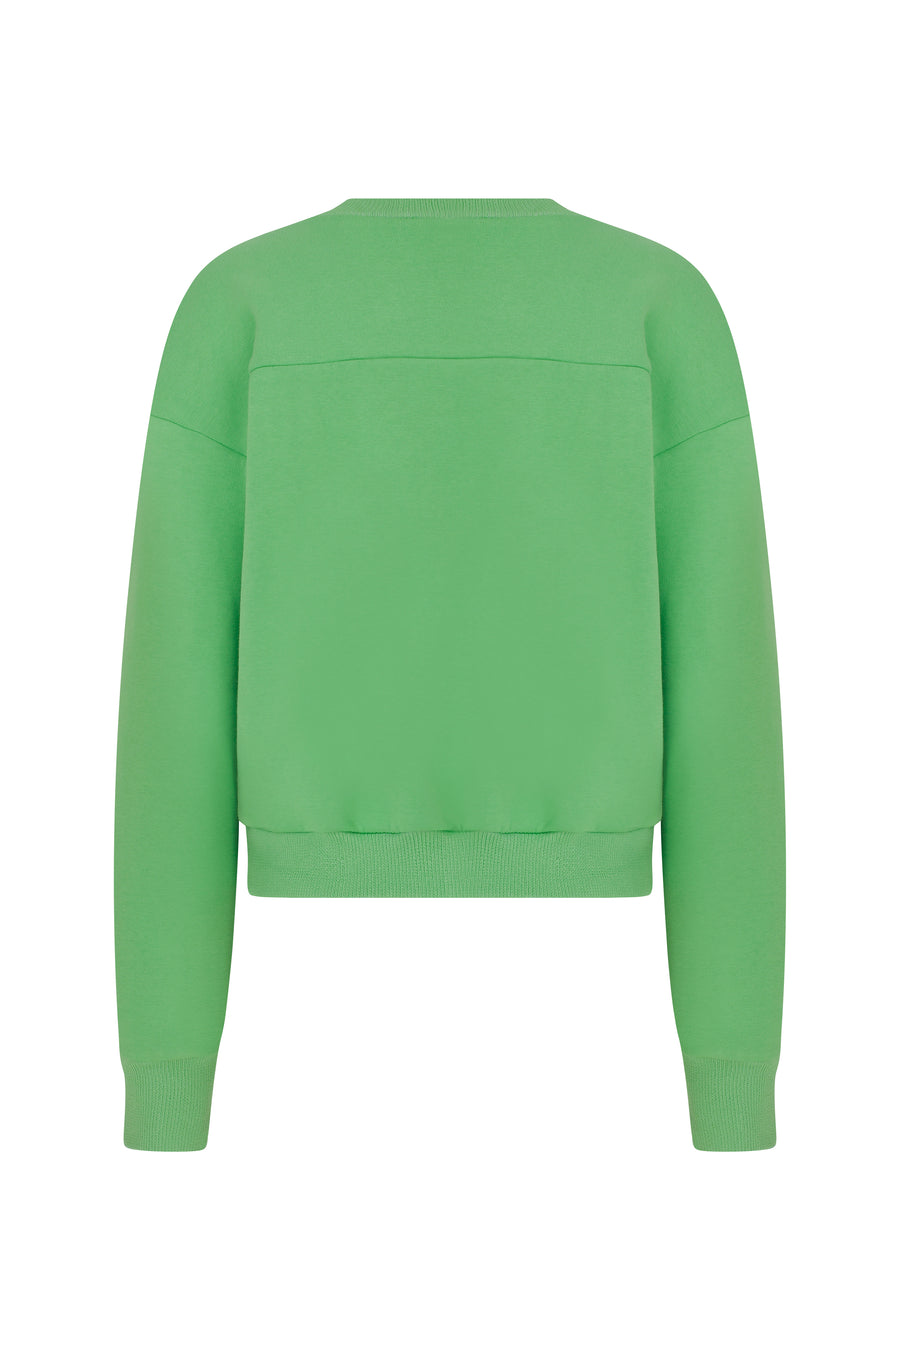 Cozy Green Sweatshirt